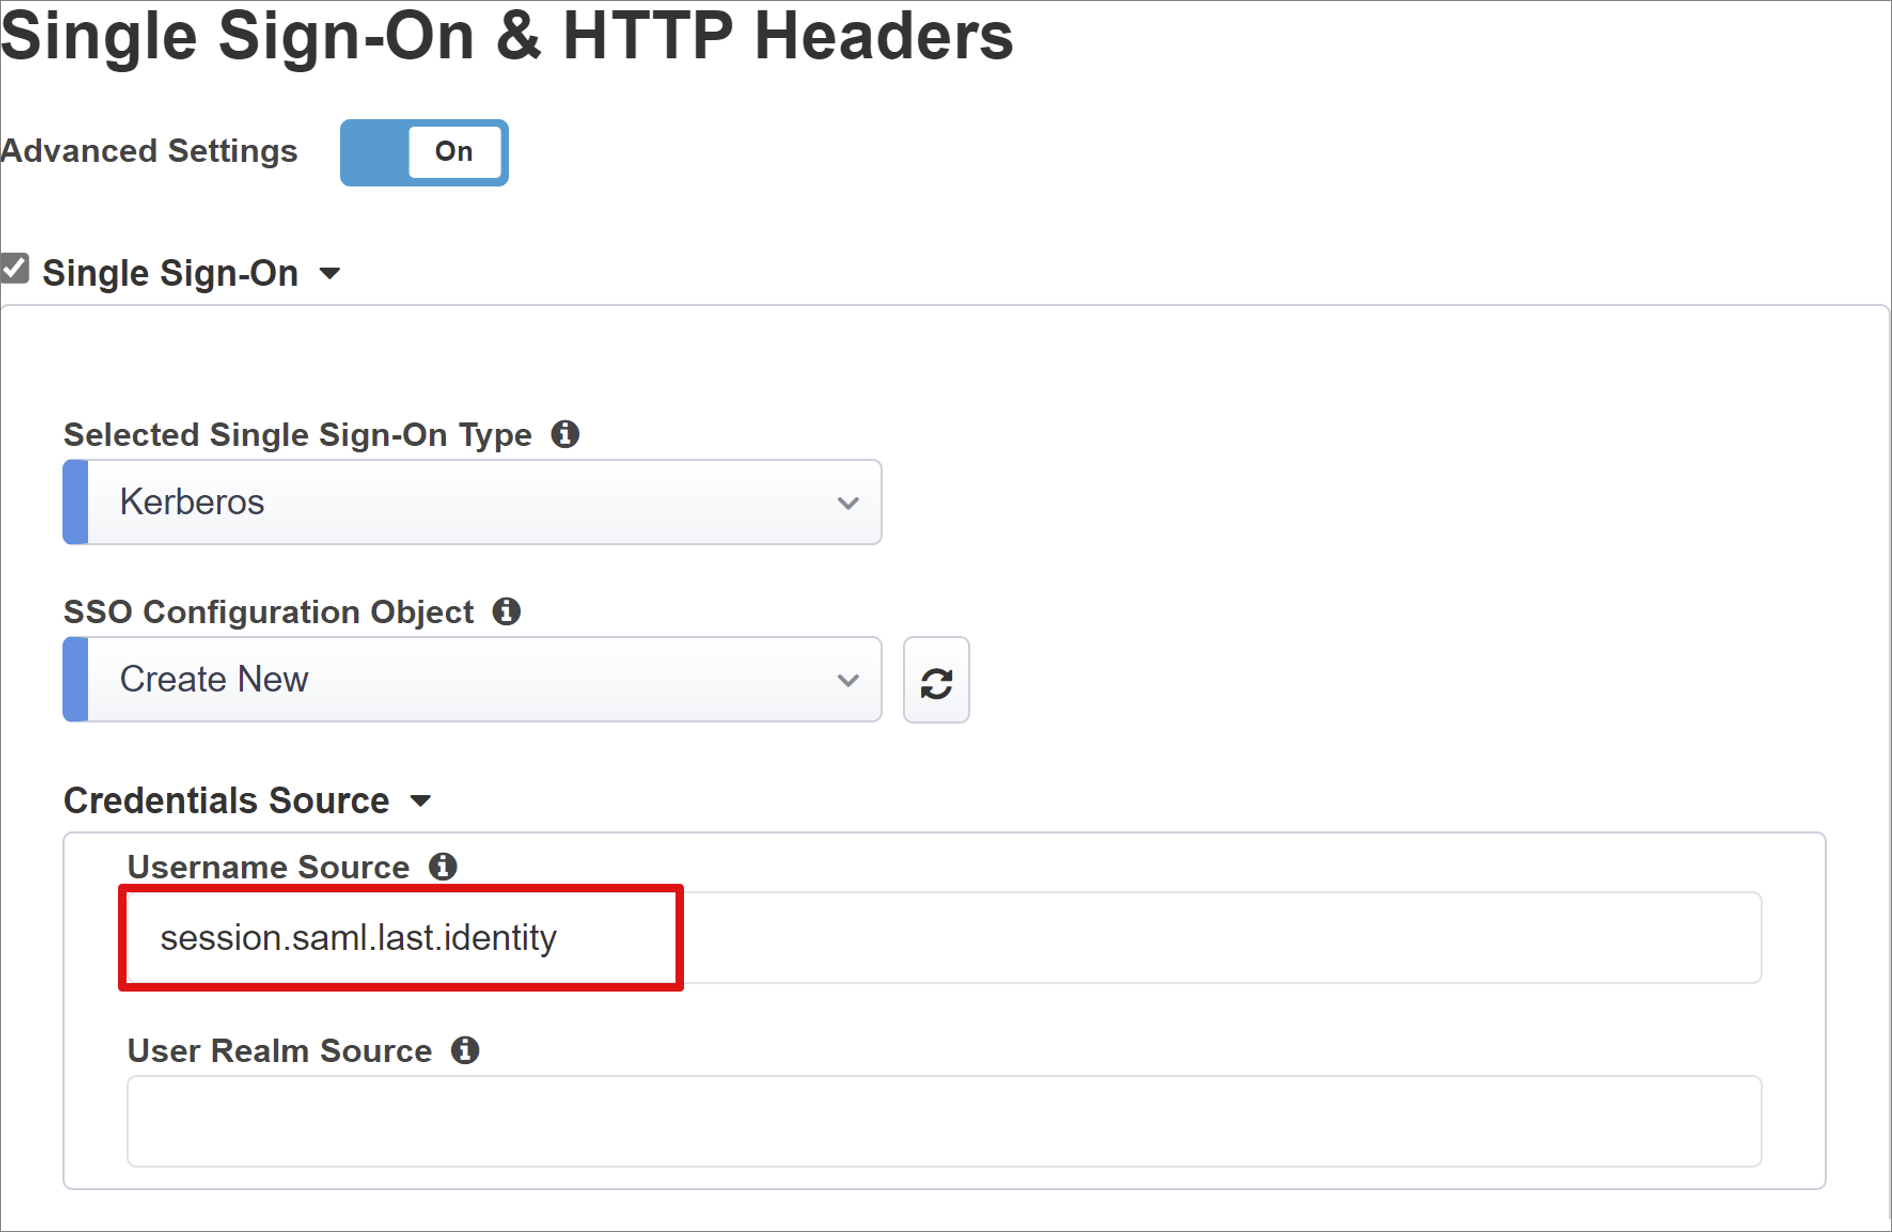 Captura de ecrã da entrada Origem do Nome de Utilizador no Início de Sessão Único e Cabeçalhos HTTP.